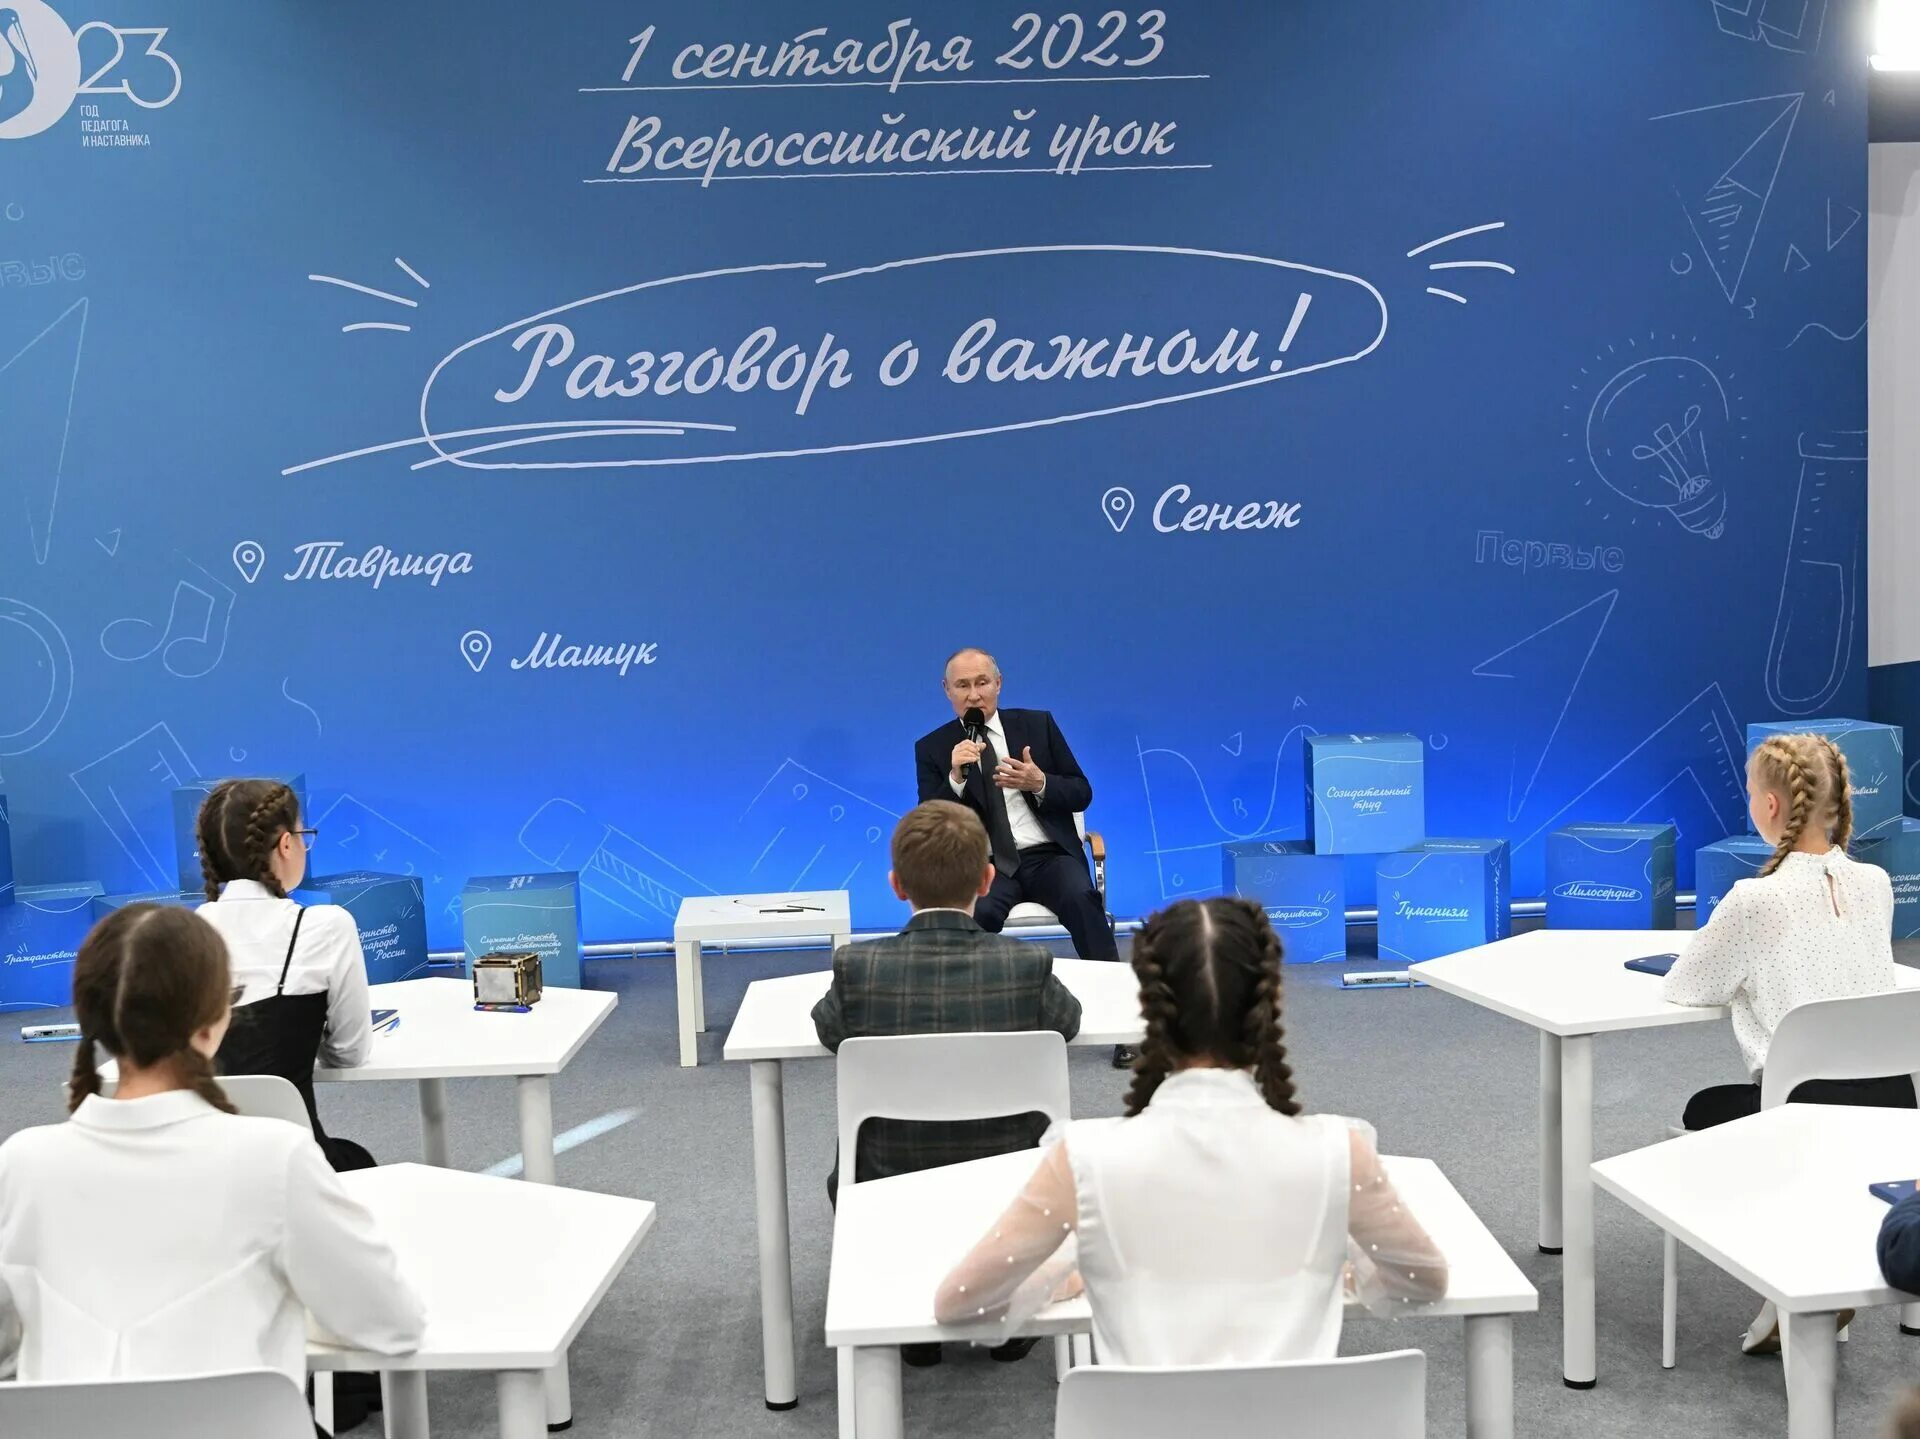 Встреча Путина со школьниками. Разговор о важном 2023 2024 22 апреля